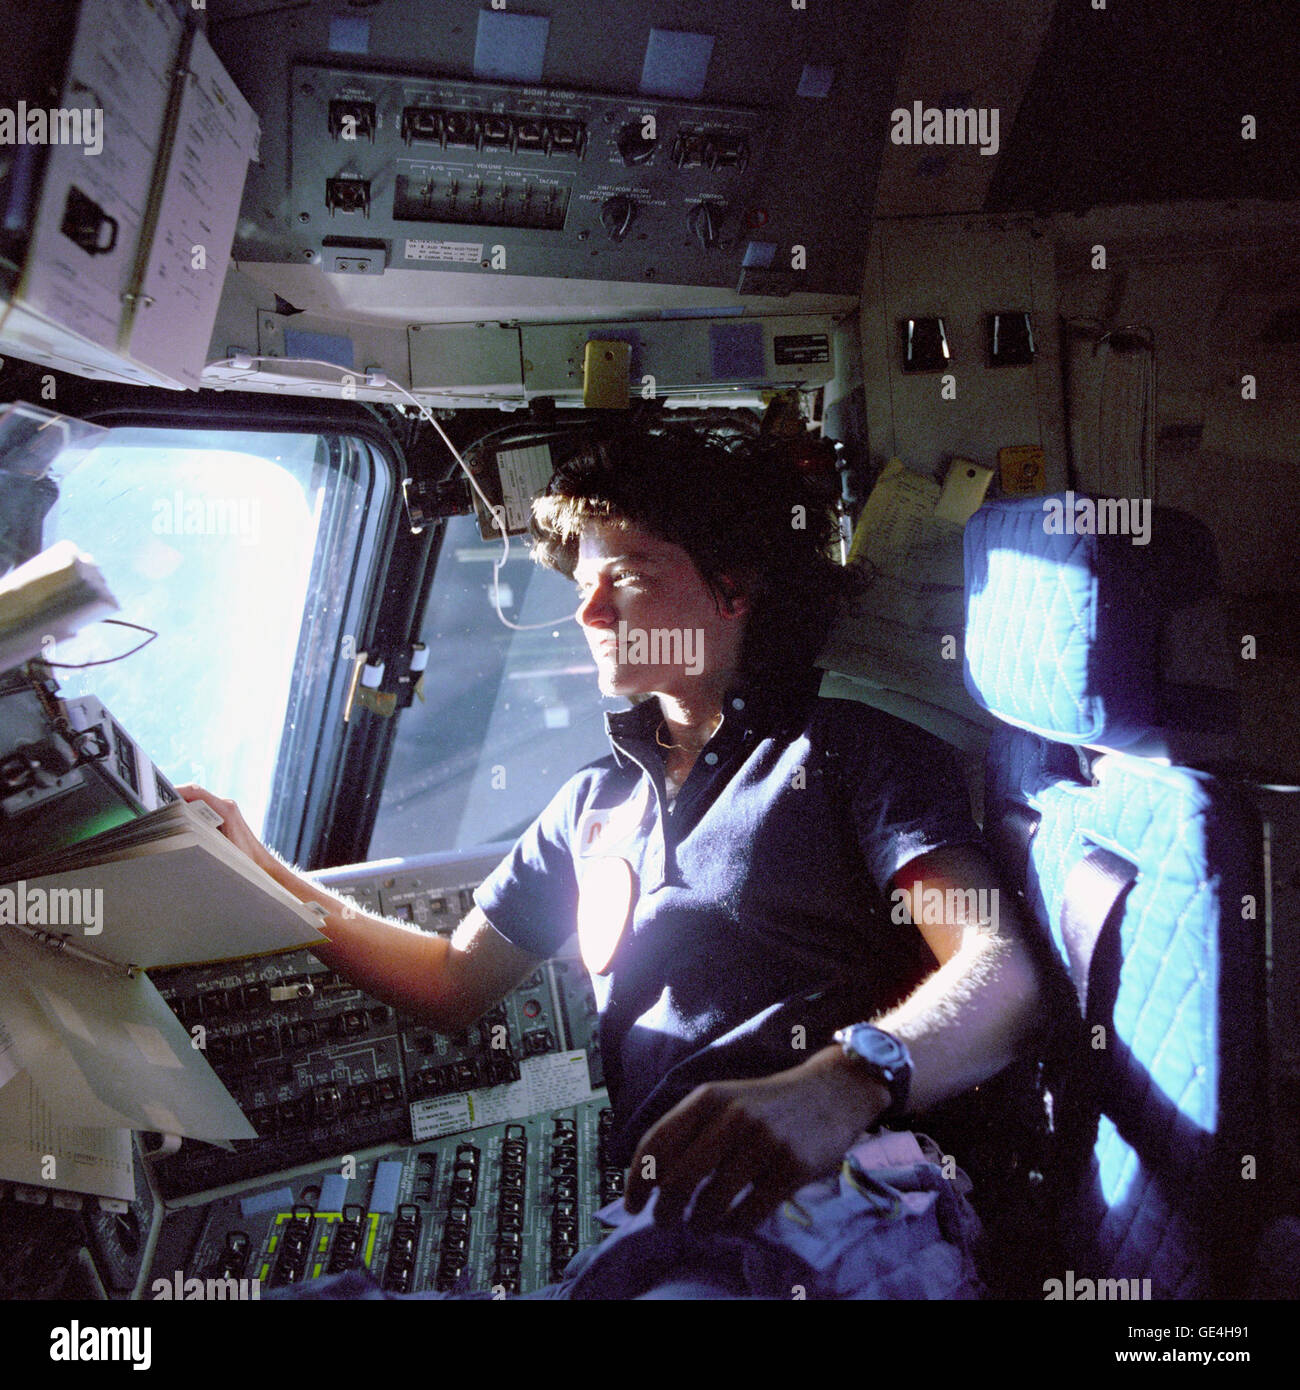 (Junio de 1983) El Astronauta Sally K. Ride, especialista de misión en STS-7, supervisa los paneles de control de la silla del piloto en la cubierta de vuelo. Flotando en frente de ella es un cuaderno de procedimientos de vuelo. Imagen # : S83-35783 Foto de stock